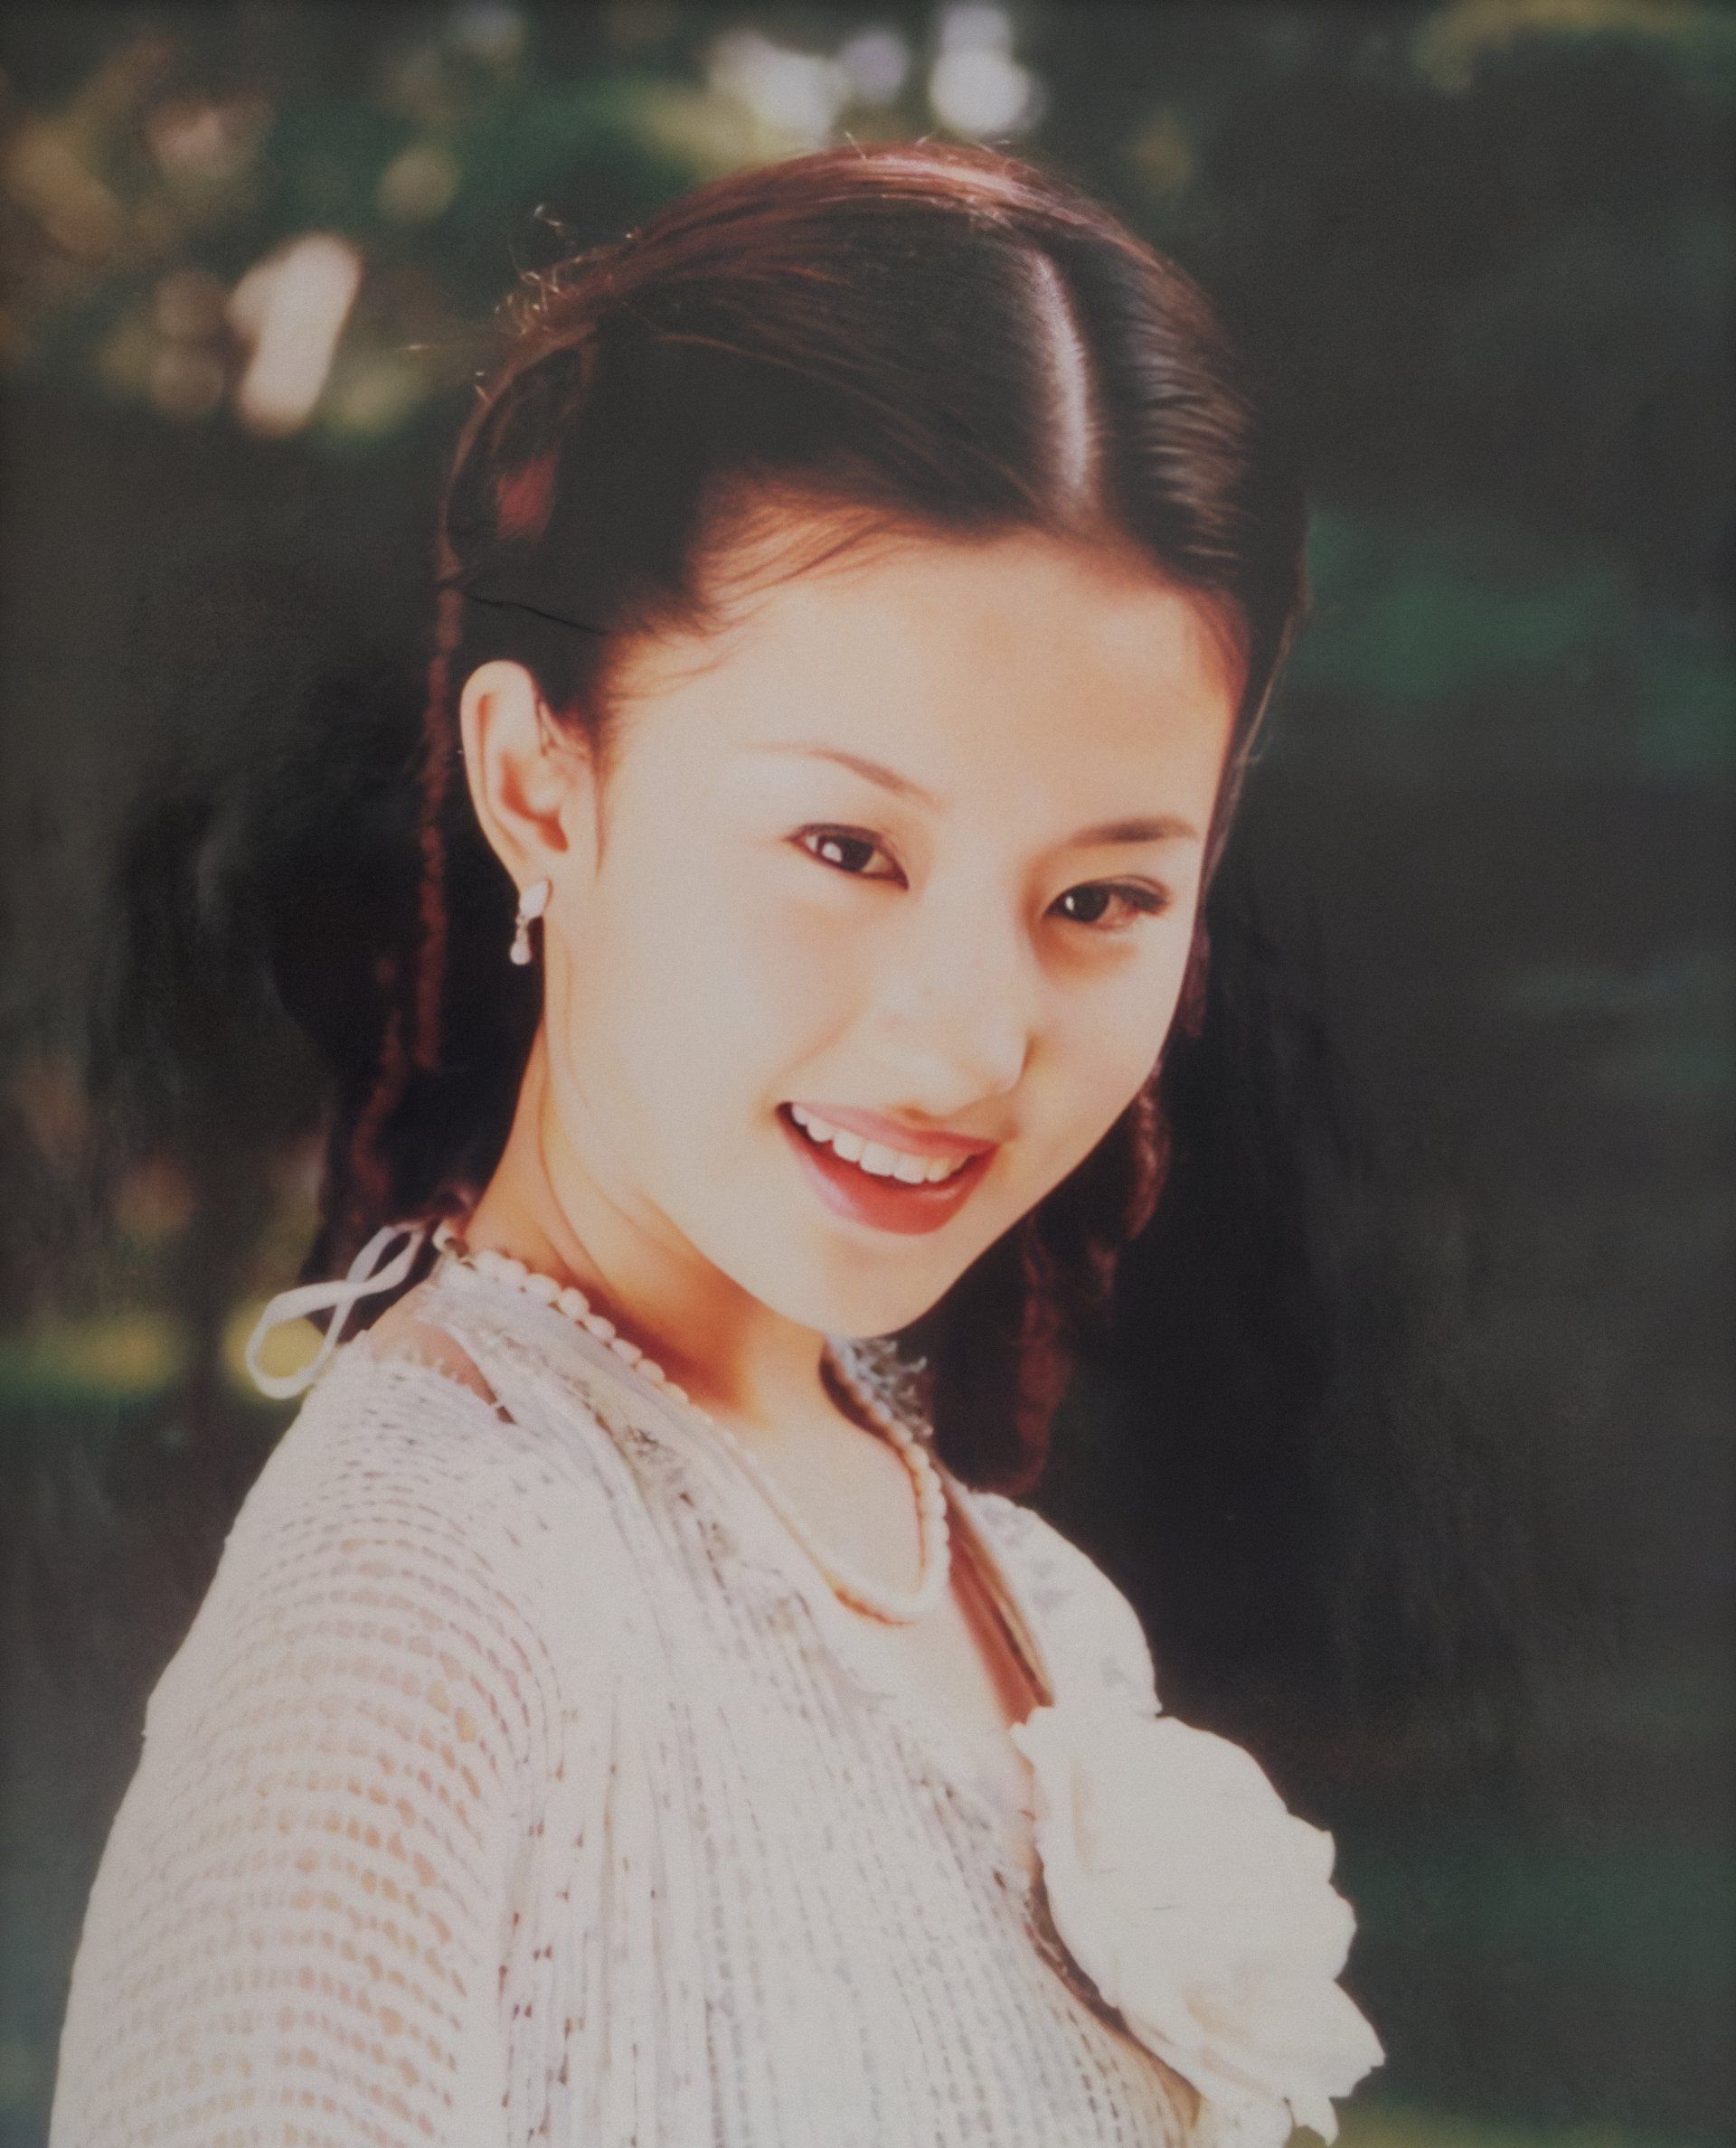 刘亦菲早期 少女图片